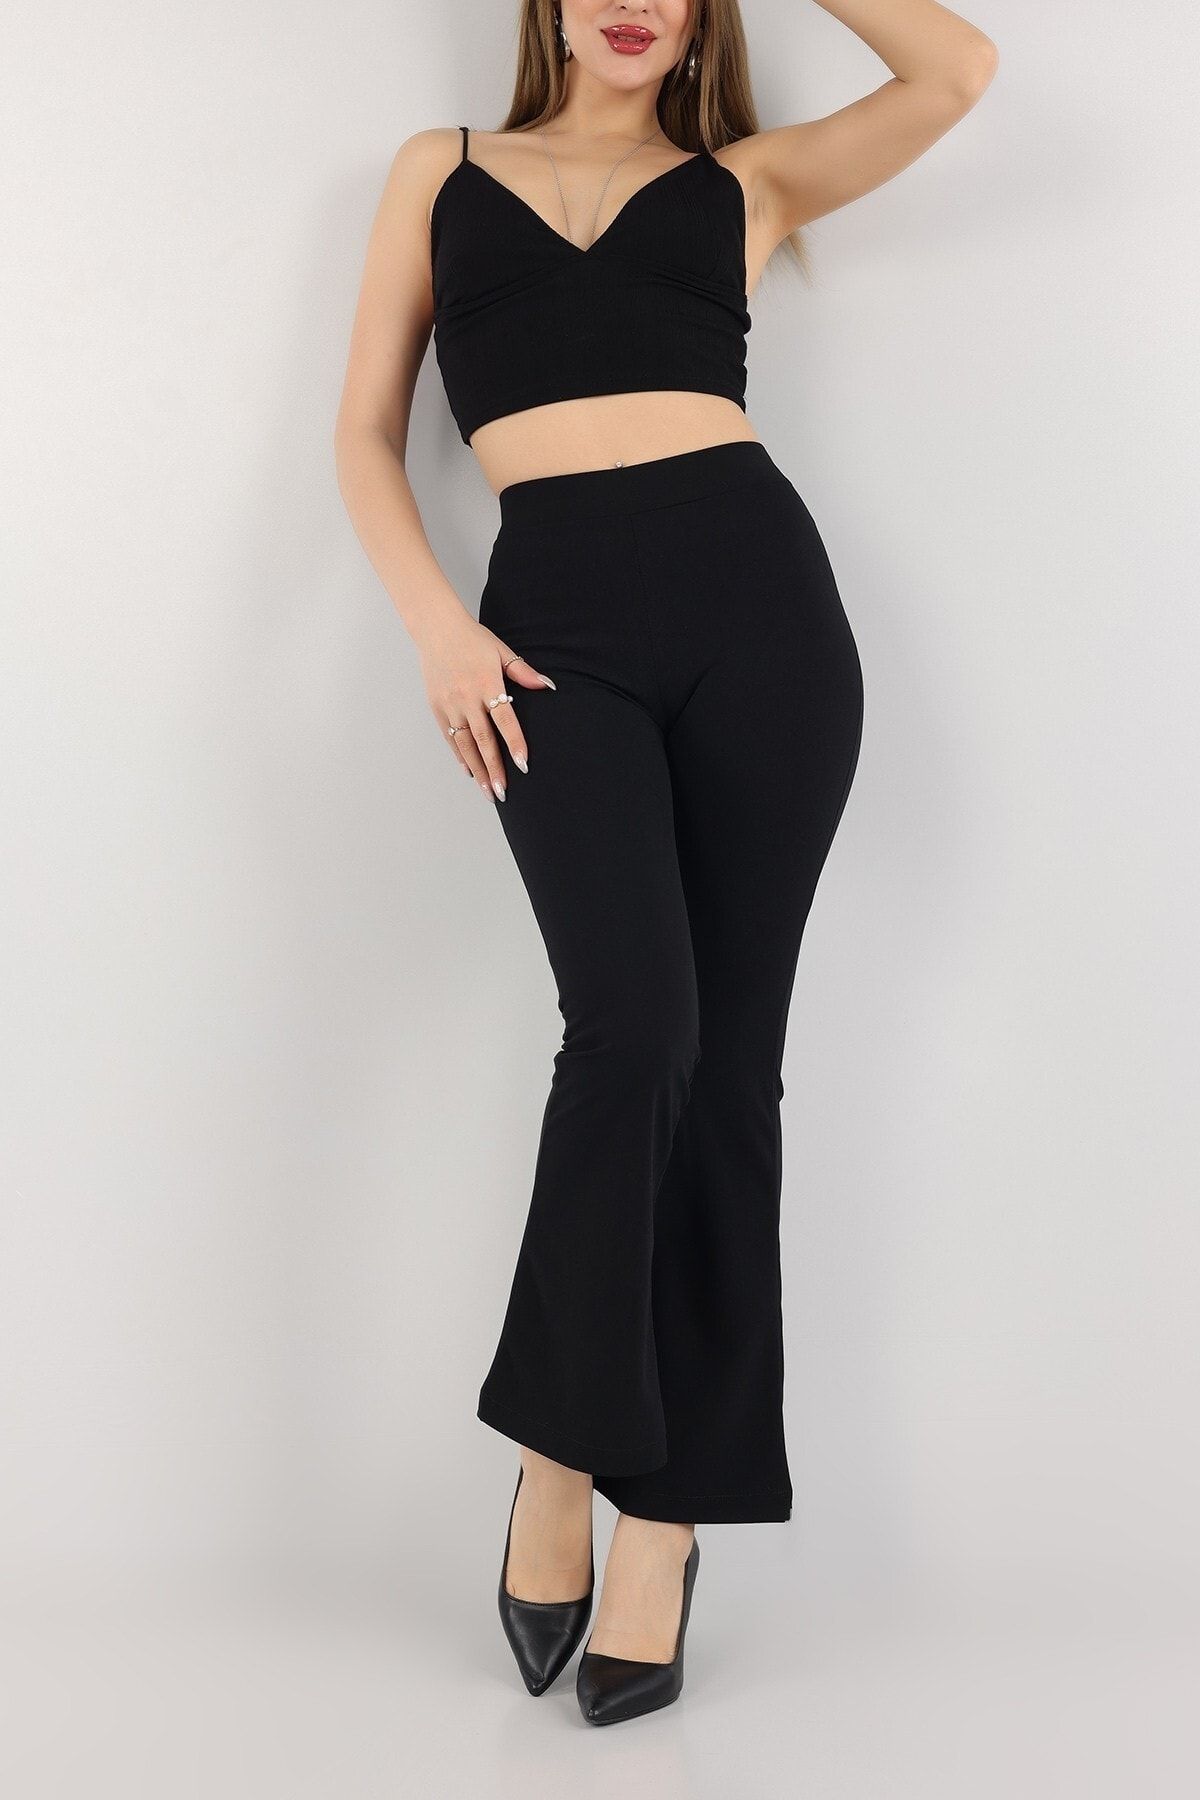 KaSheHa Siyah Krep Kumaş Likralı Yüksek Bel Toparlayıcı Ispanyol Paça Tayt Pantolon 100 Cm